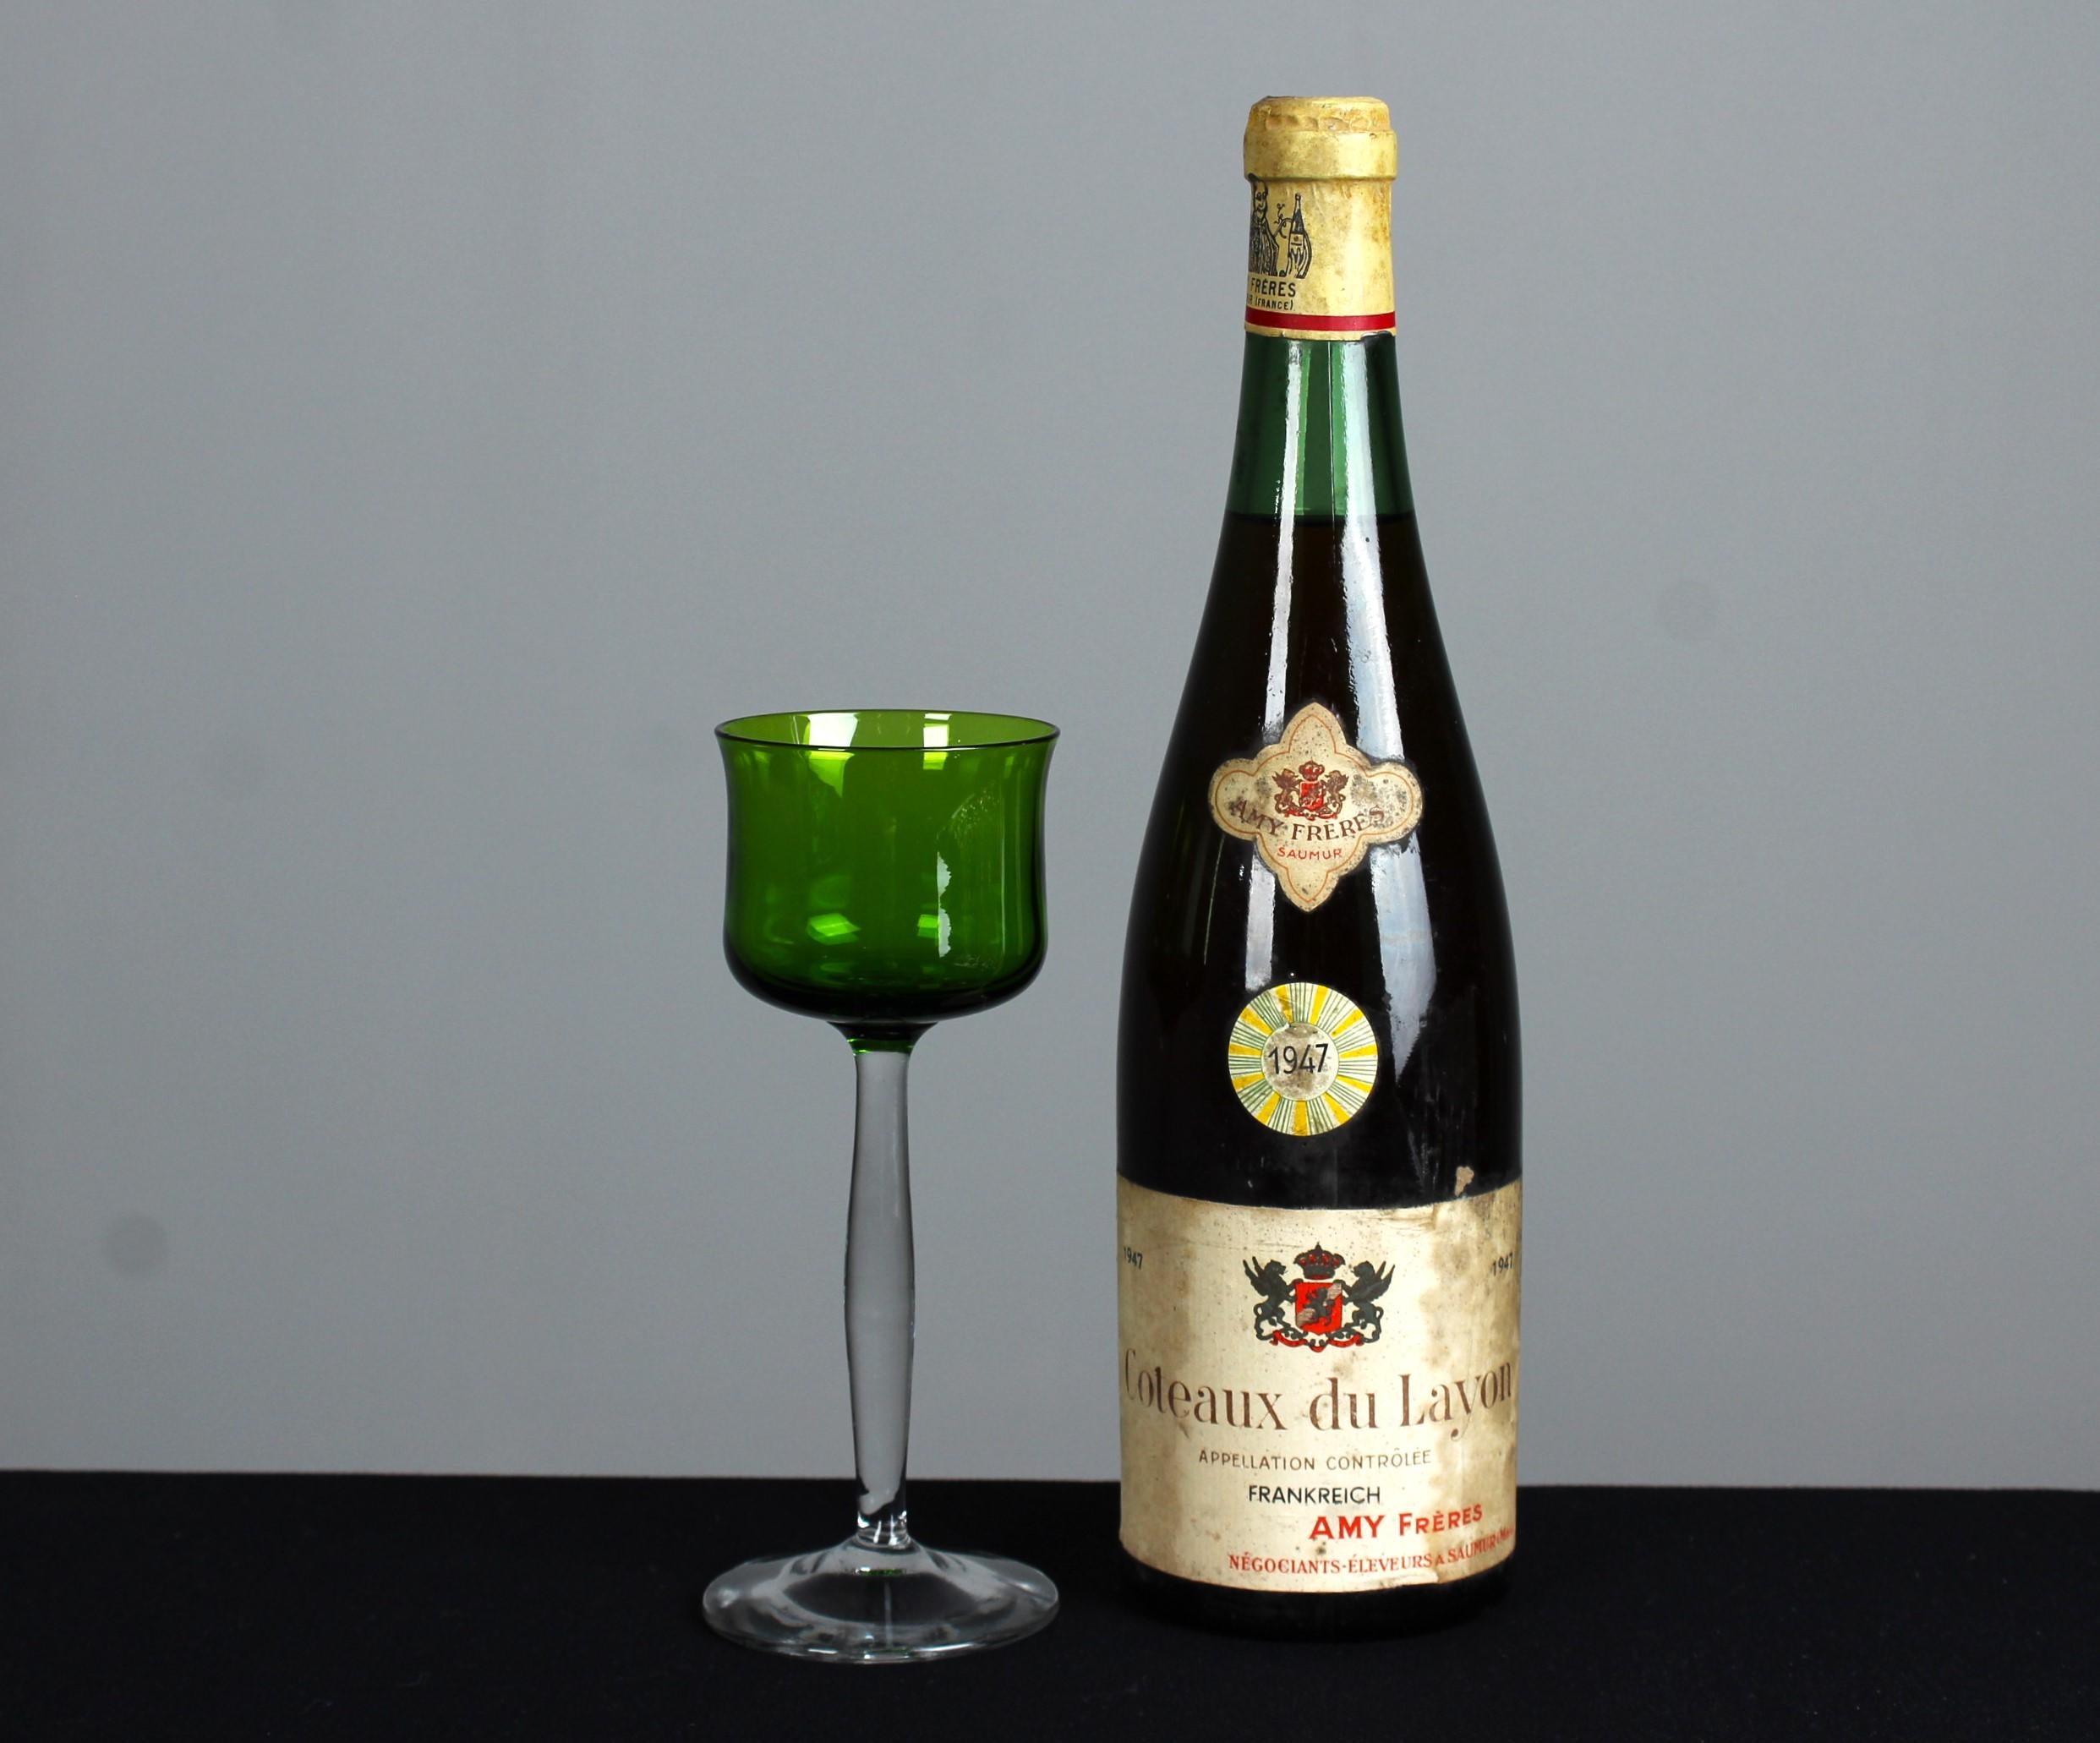 Ein schönes antikes, grünes Weinglas.

An der Wende zum 20. Jahrhundert blühte in Frankreich die Kultur des guten Essens und des geselligen Beisammenseins, was zur Entstehung eines Symbols der französischen Genießerkultur führte: das Aperitifglas.